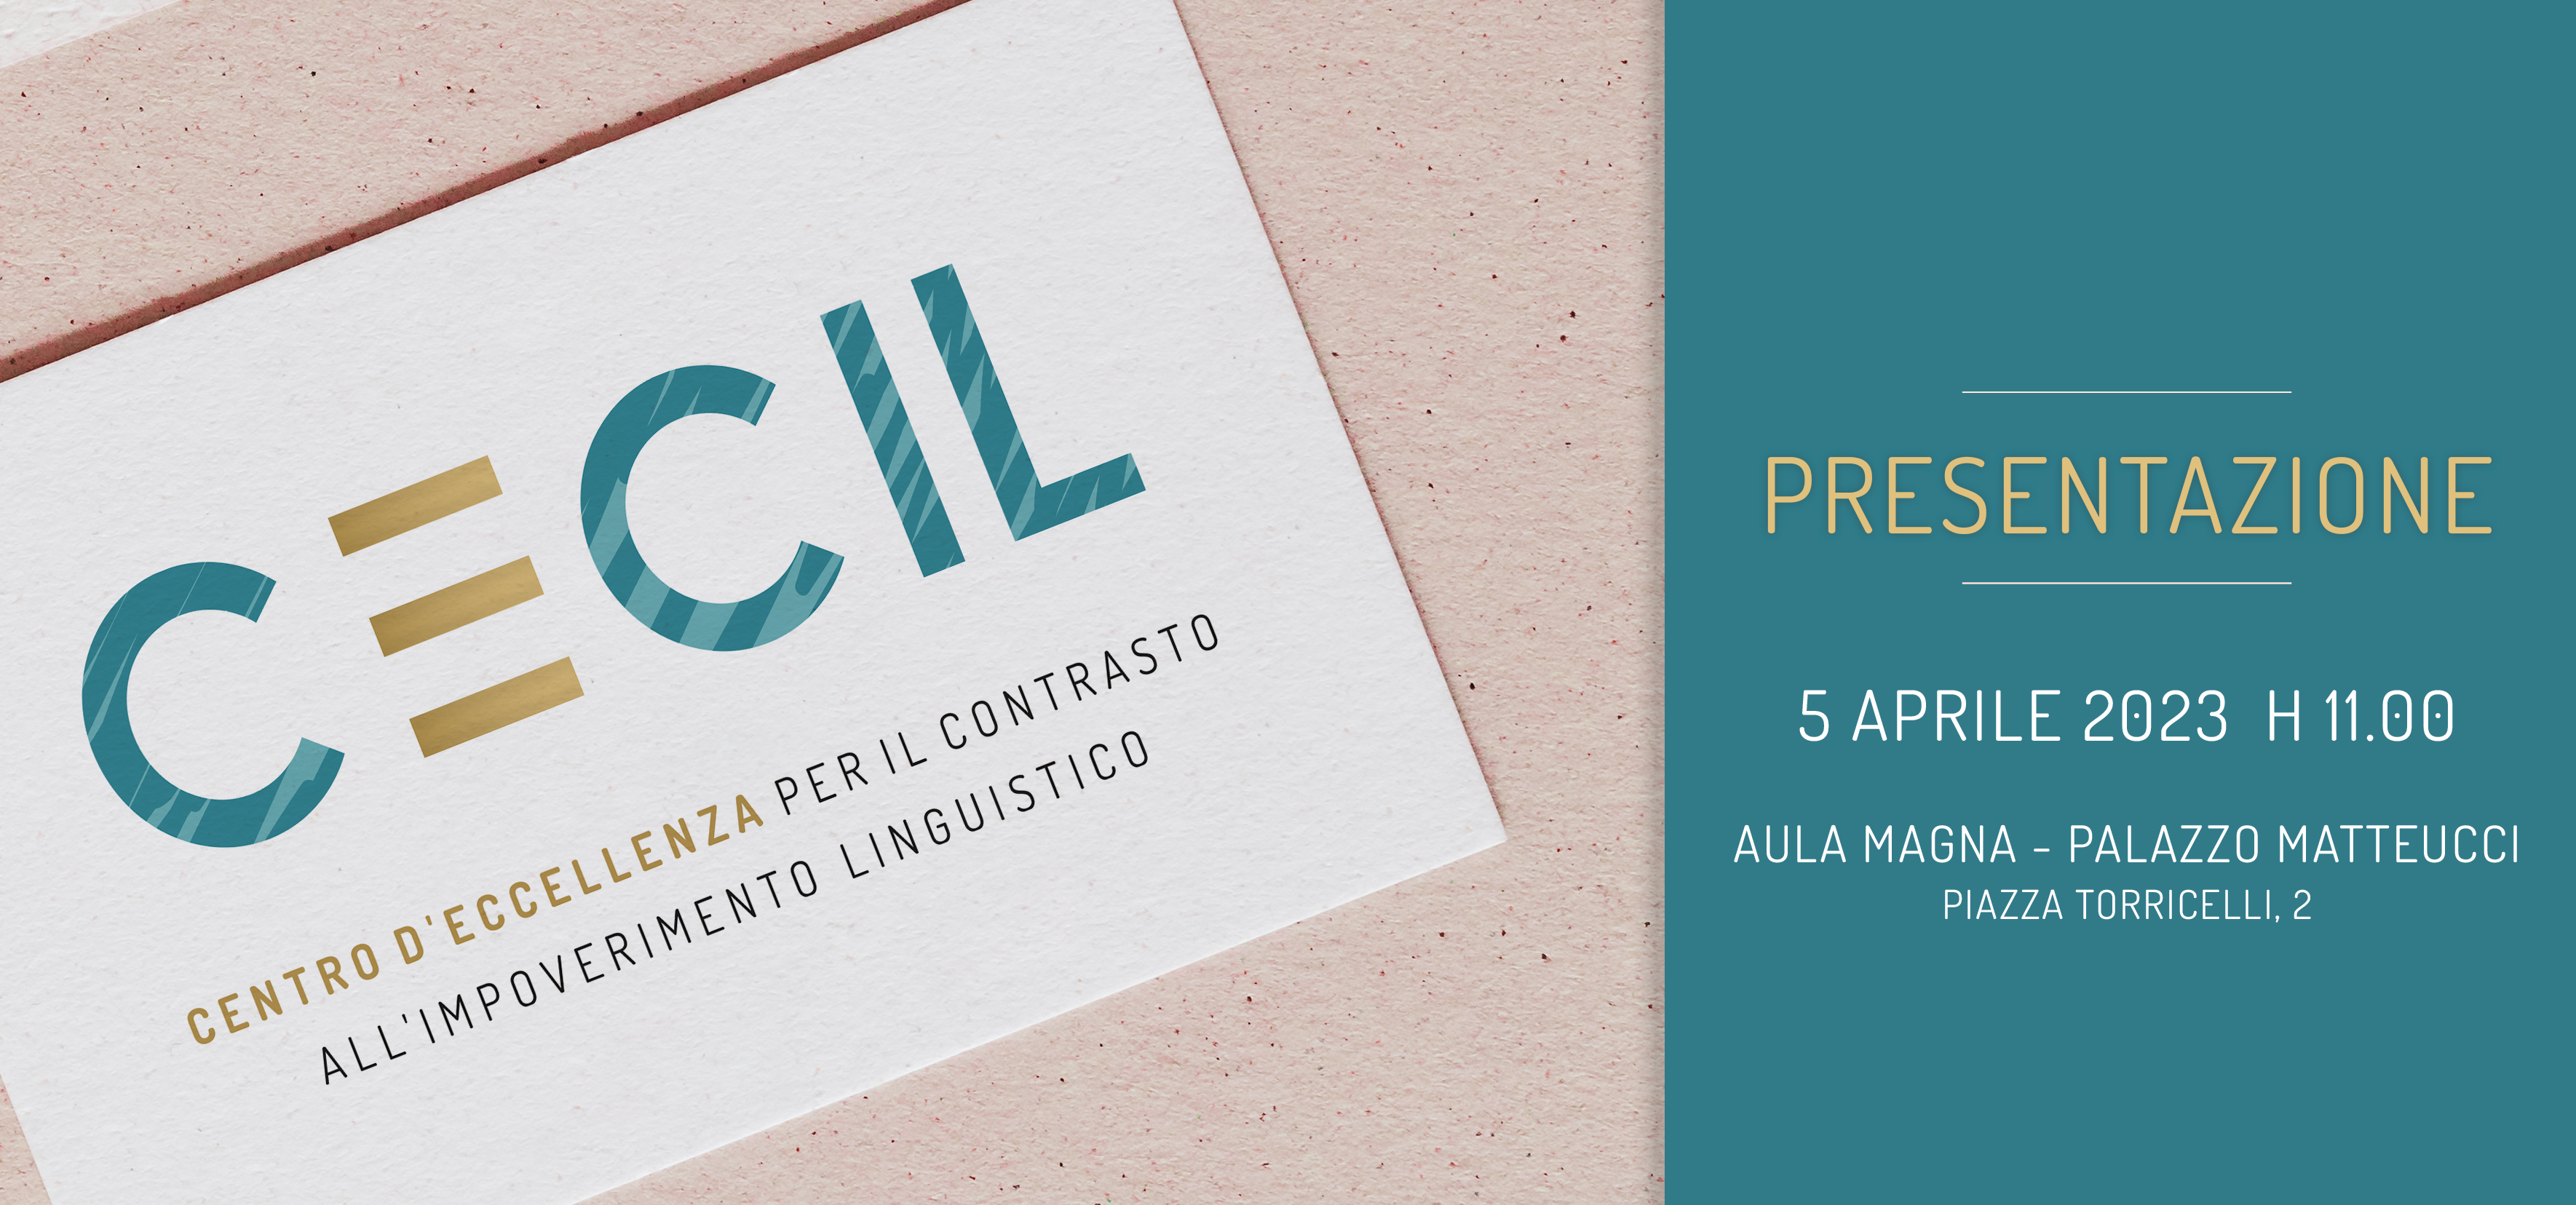 Dipartimenti di eccellenza: Filologia, Letteratura e Linguistica presenta il progetto CECIL per il quinquennio 2023-2027